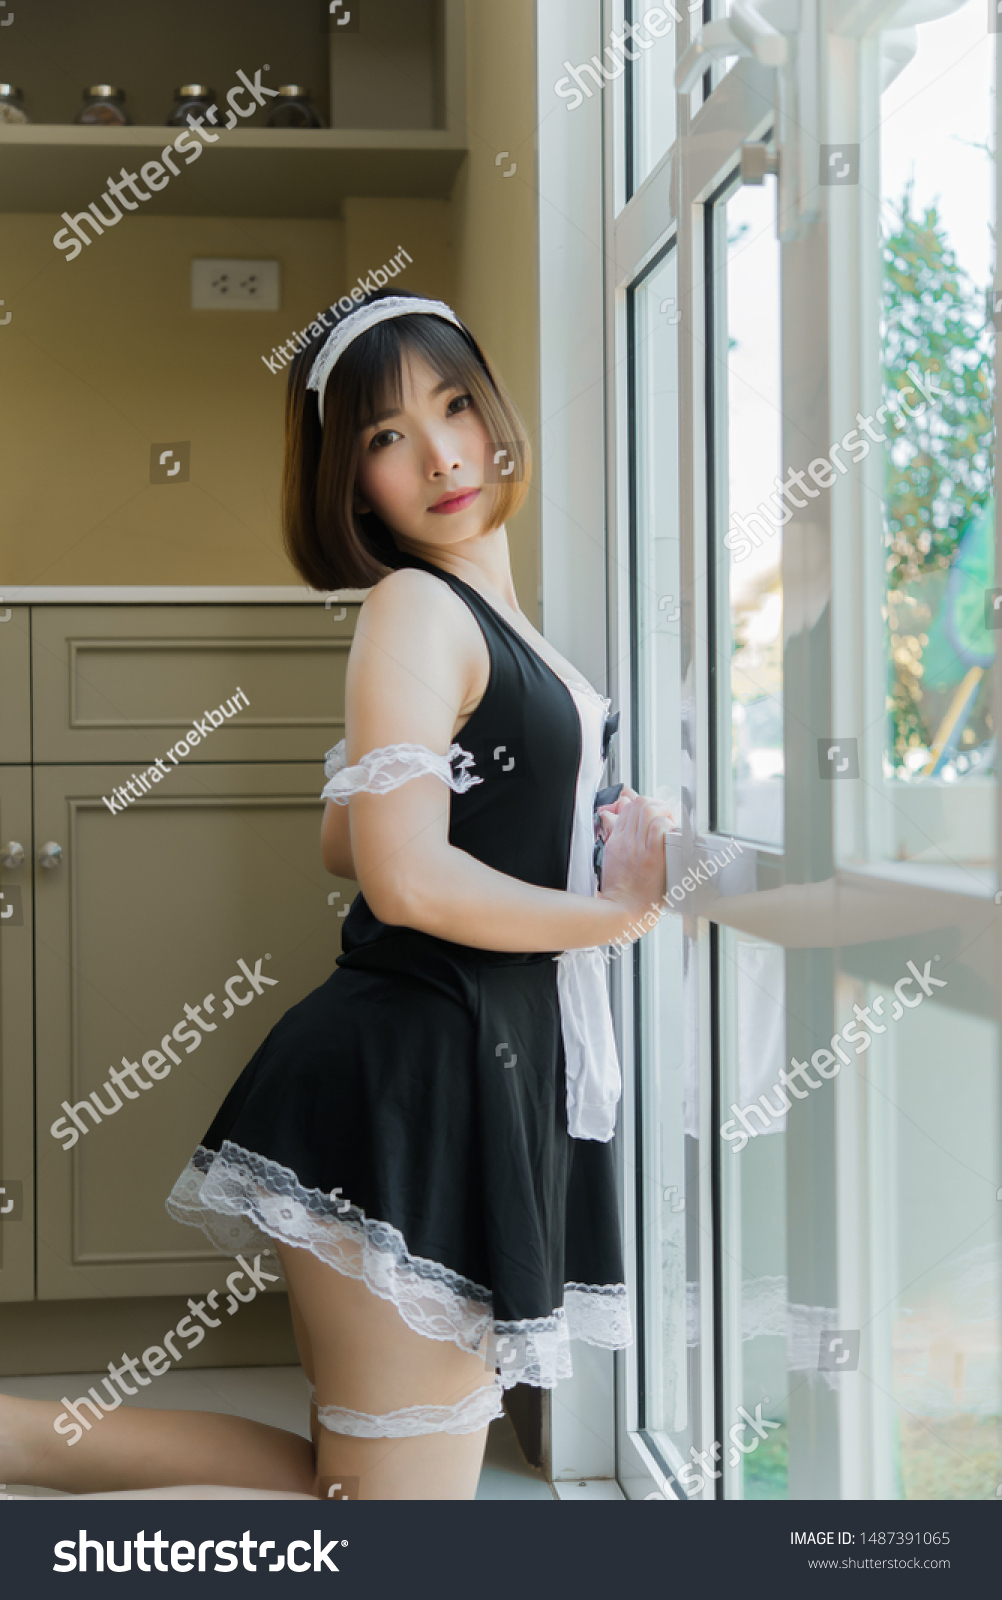 Hot Asian Maids